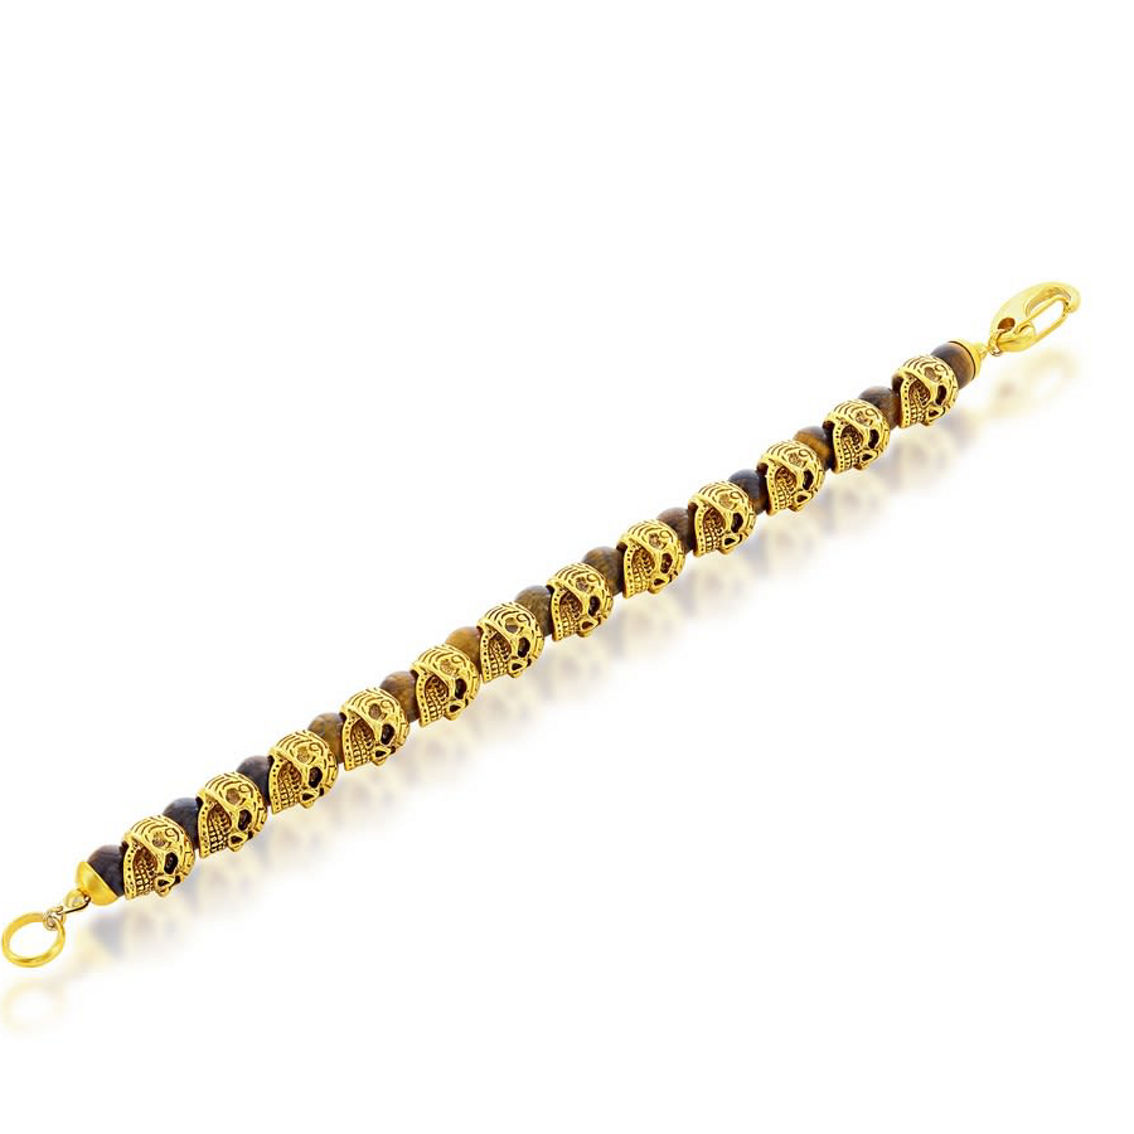 Metallo Stainless Steel Genuine Tiger Eye Beads Skull Bracelet - Gold Plated - Image 2 of 4